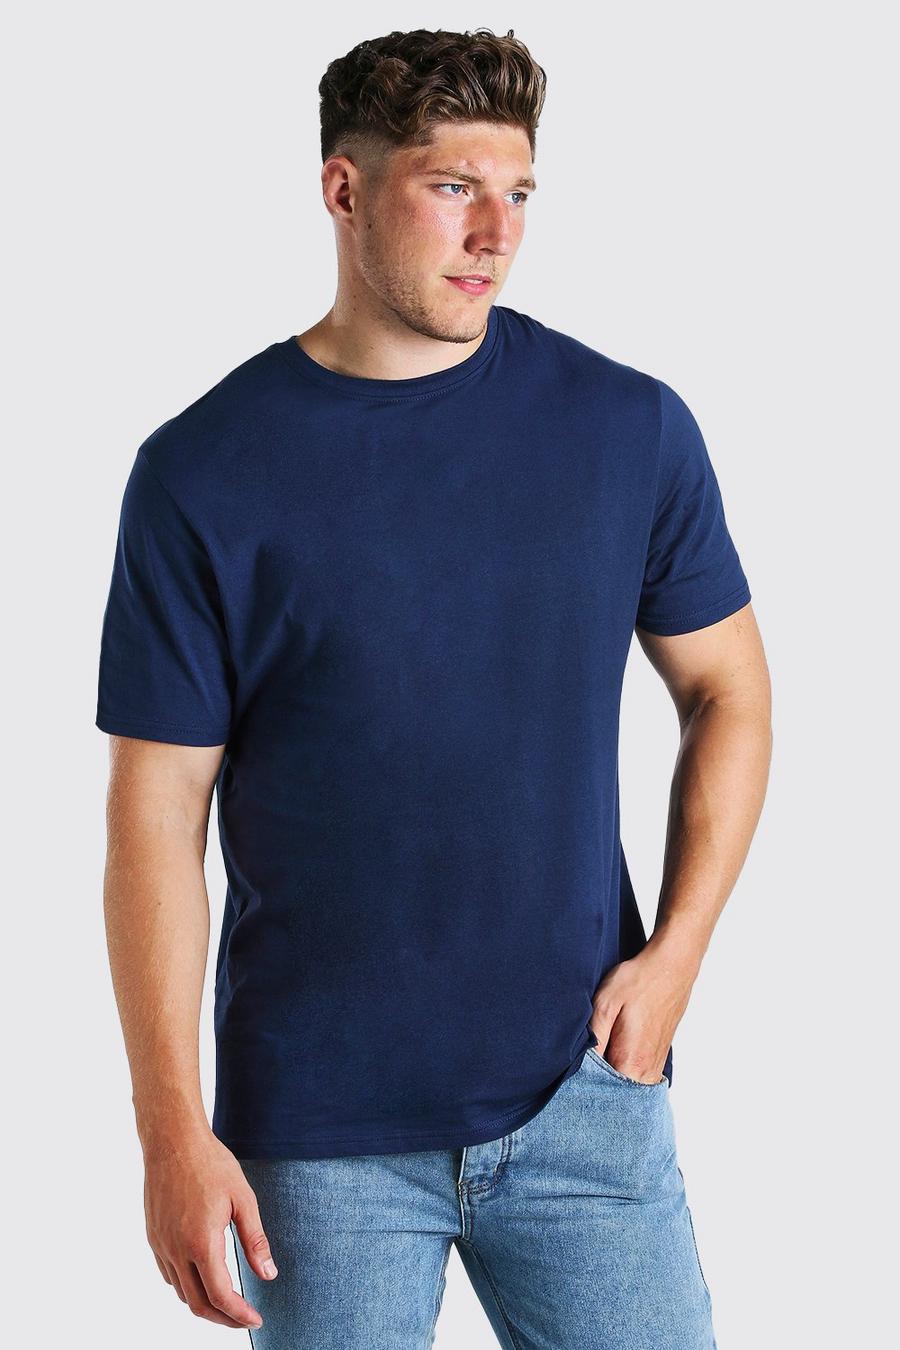 Navy marine Plus Size Longline Basic T-Shirt